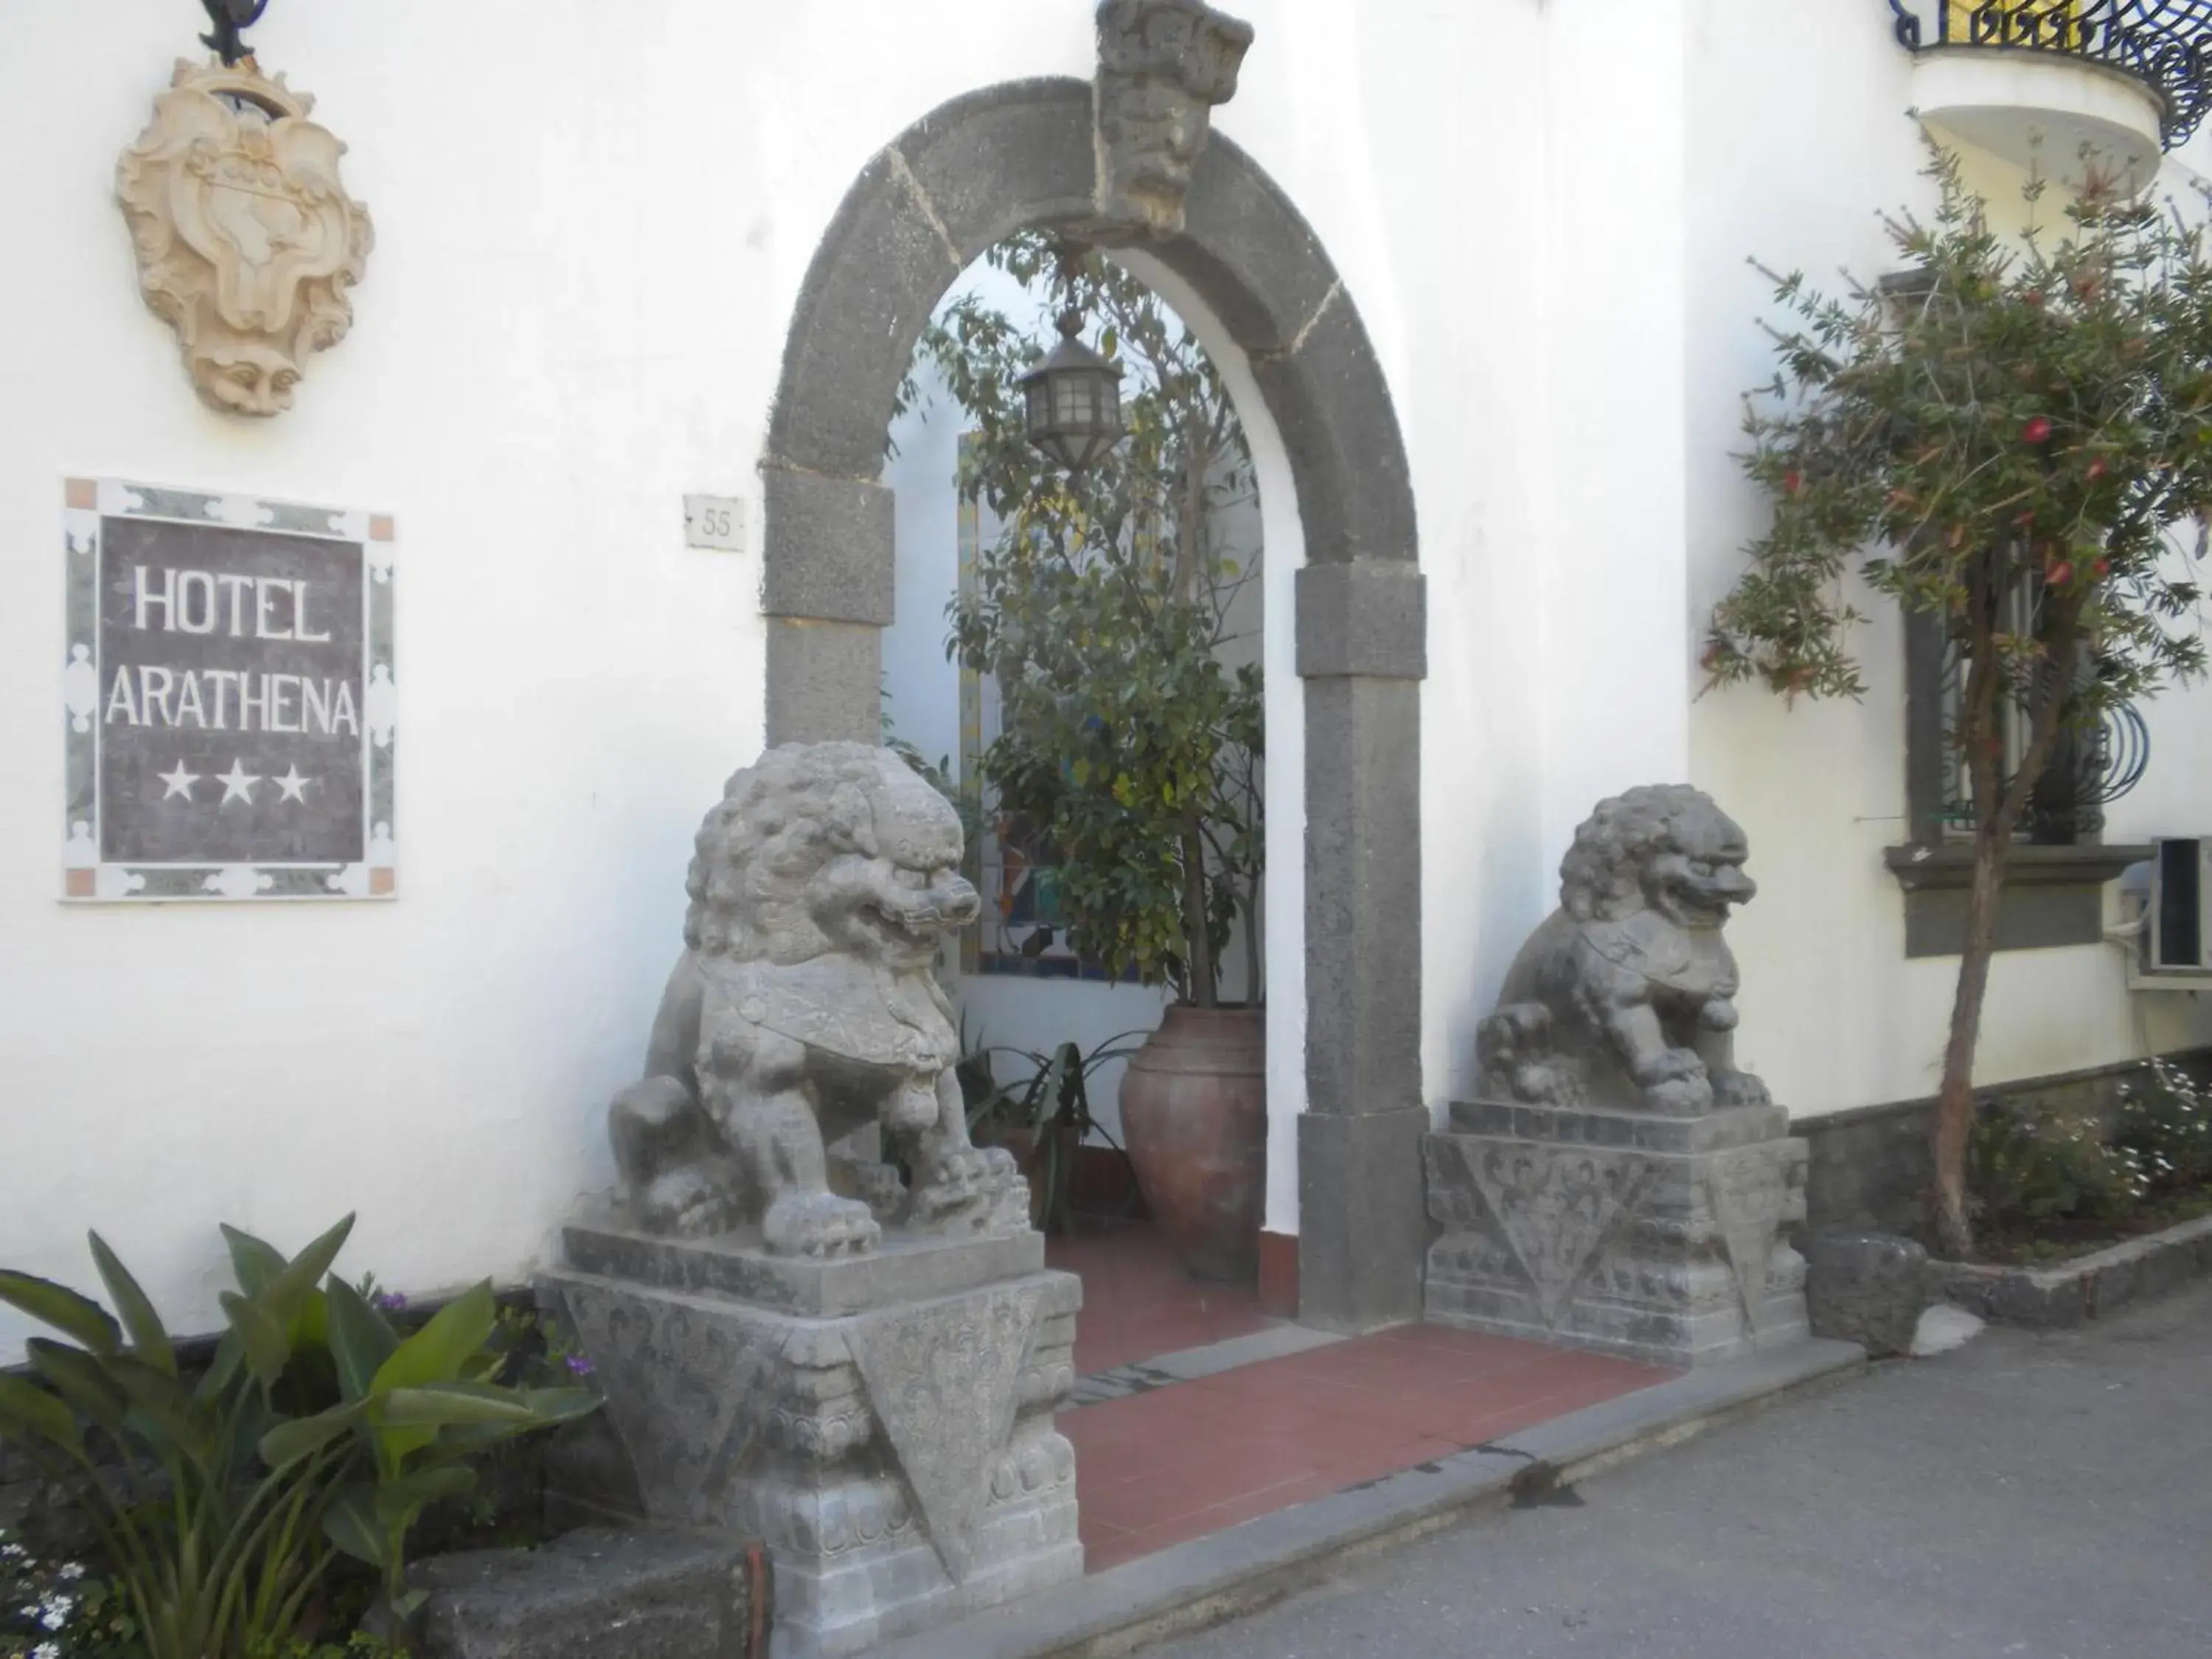 Facade/entrance in Arathena Rocks Hotel